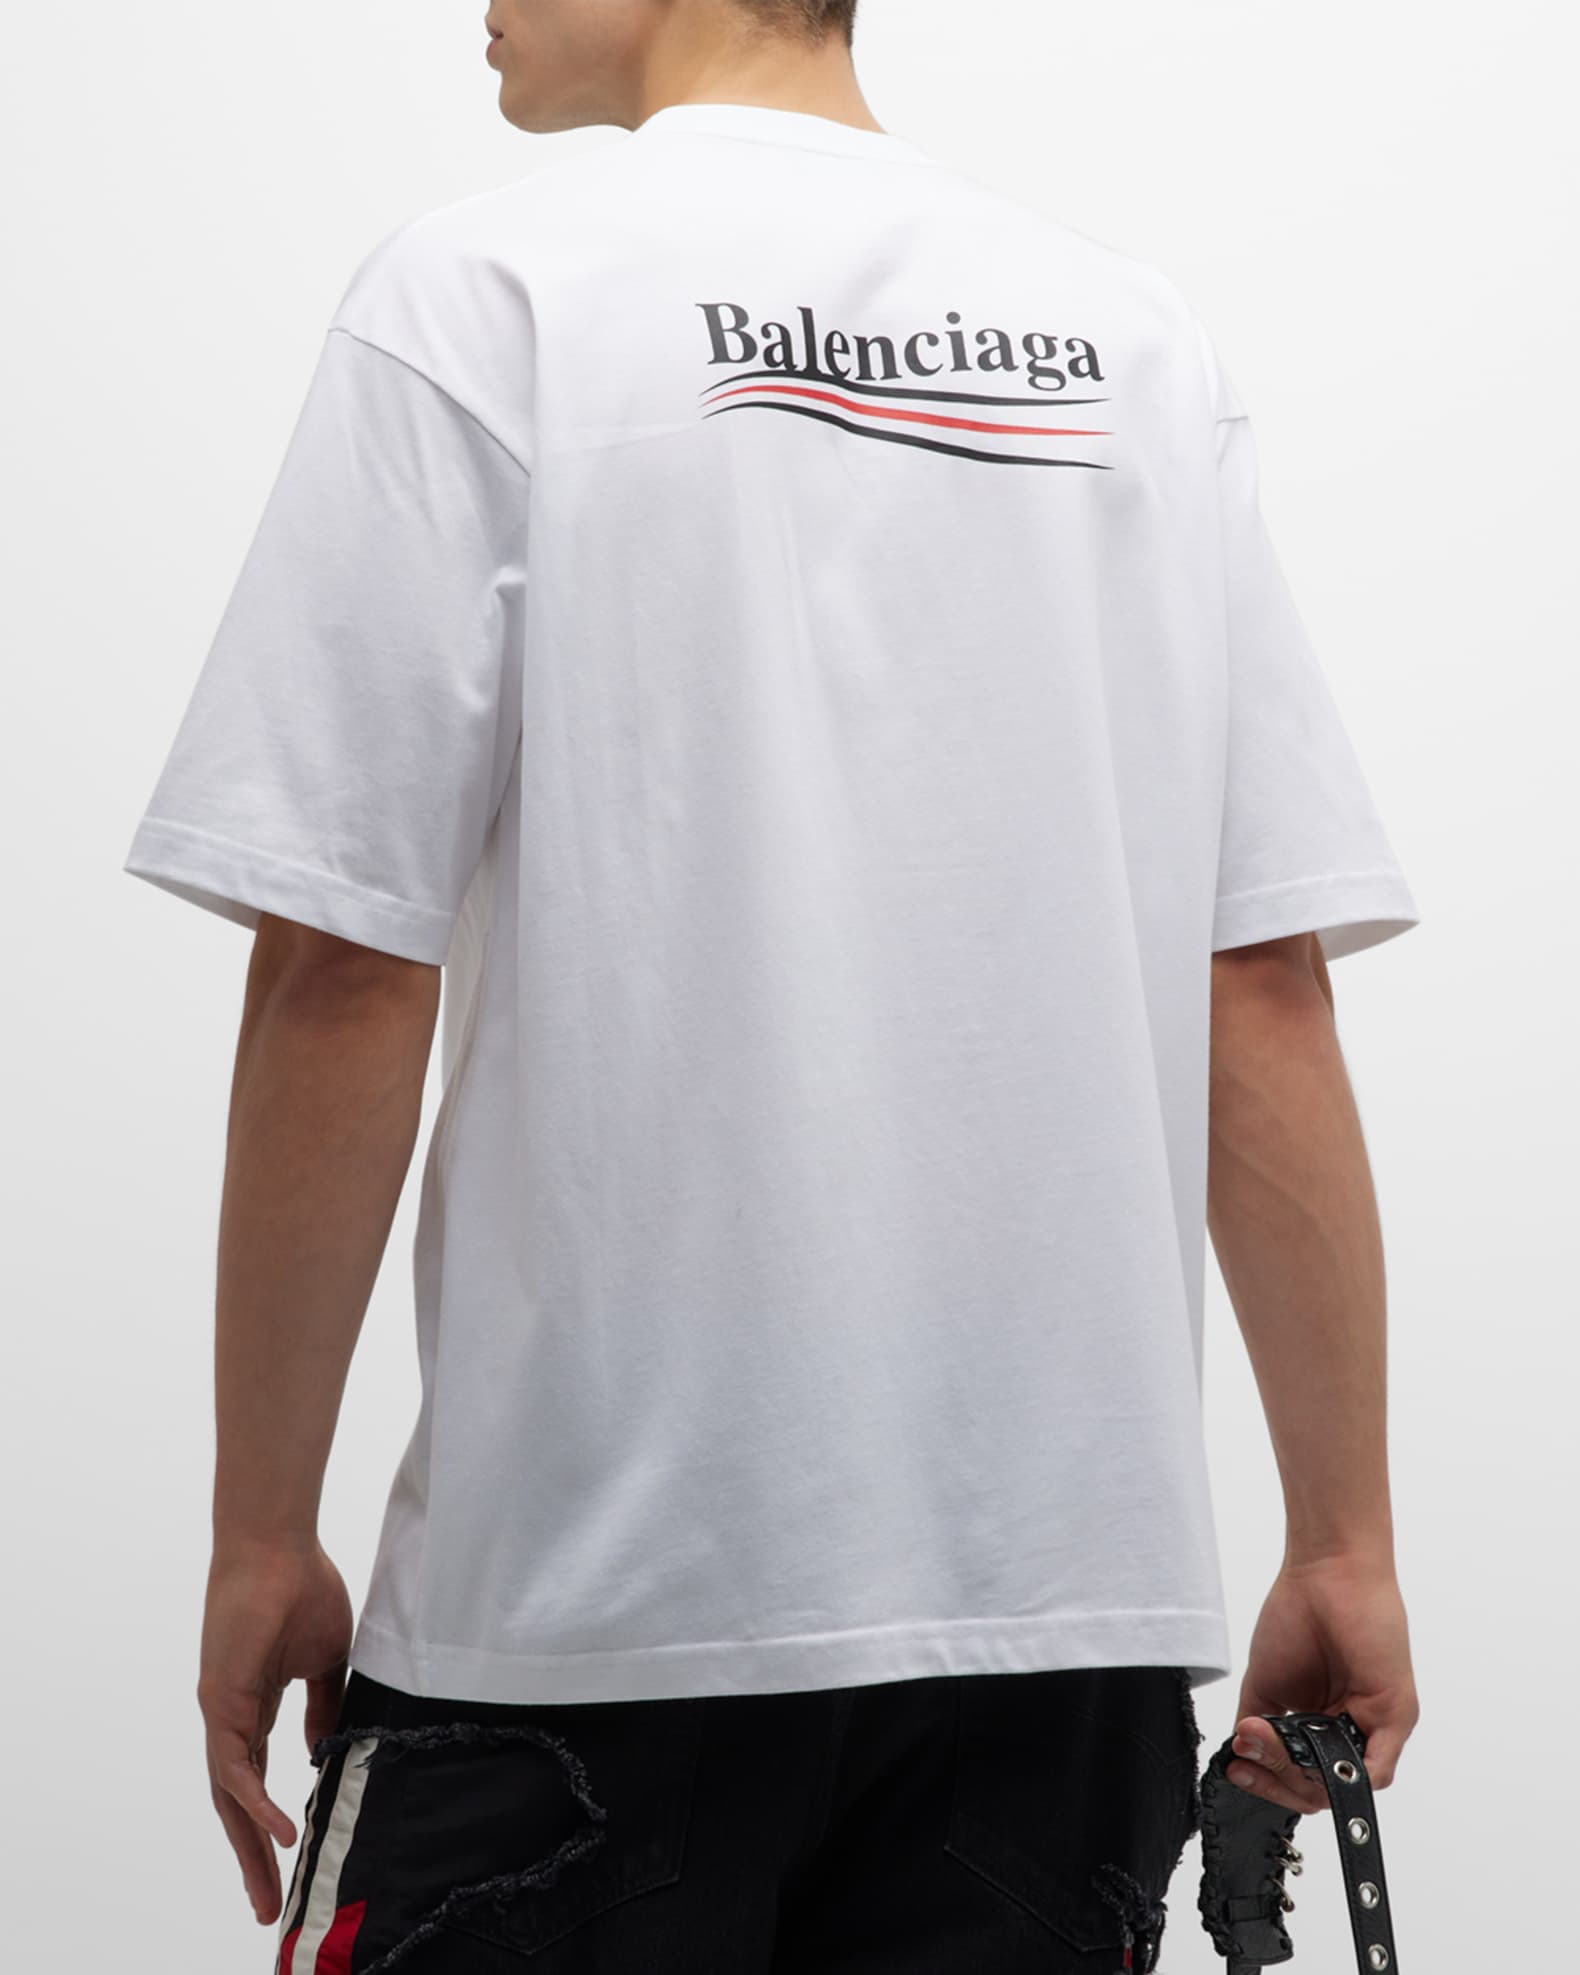 Balenciaga Men's Political Campaign T Shirt Large Fit | Neiman Marcus